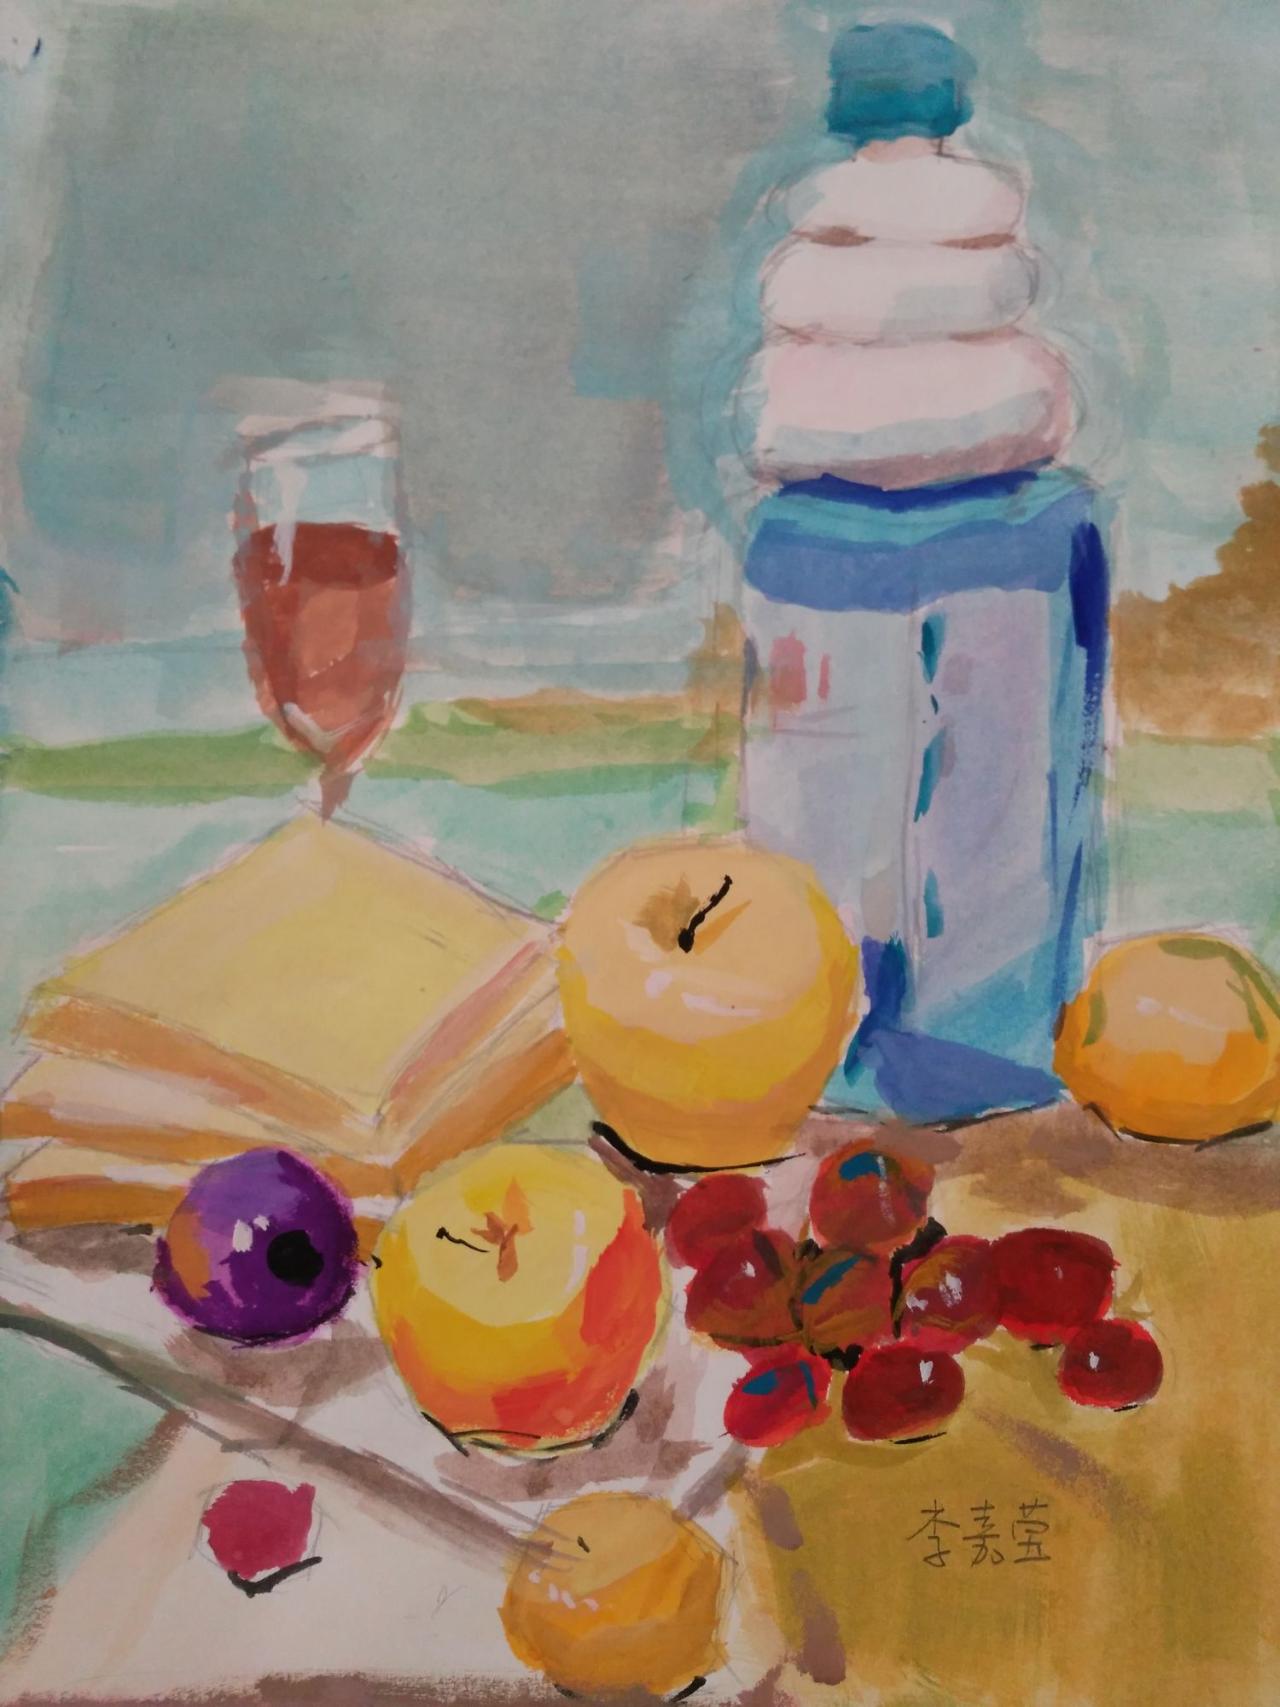 水粉静物 矿泉水瓶、苹果、葡萄、面包片、玻璃杯、盘子等 李嘉莹画